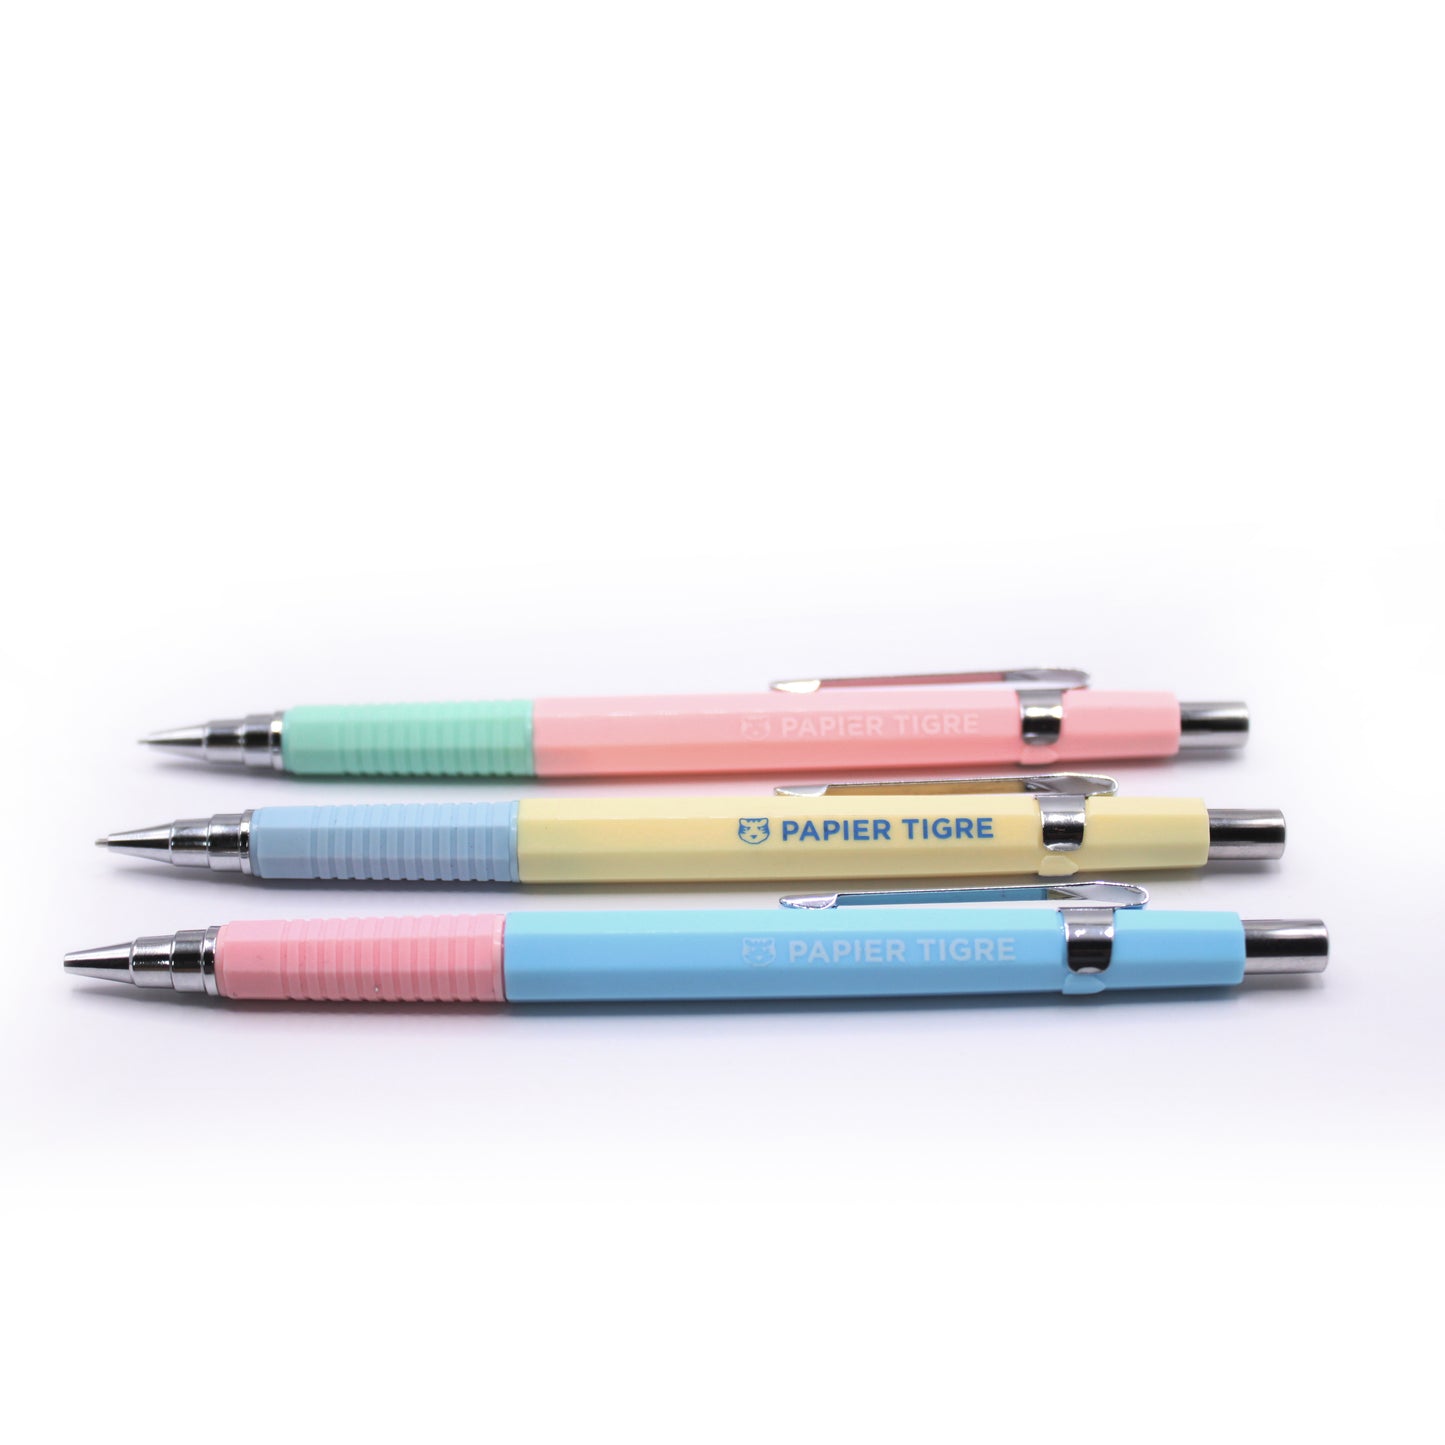 Papier Tigre Mechanical Pencil - Blue n Pink